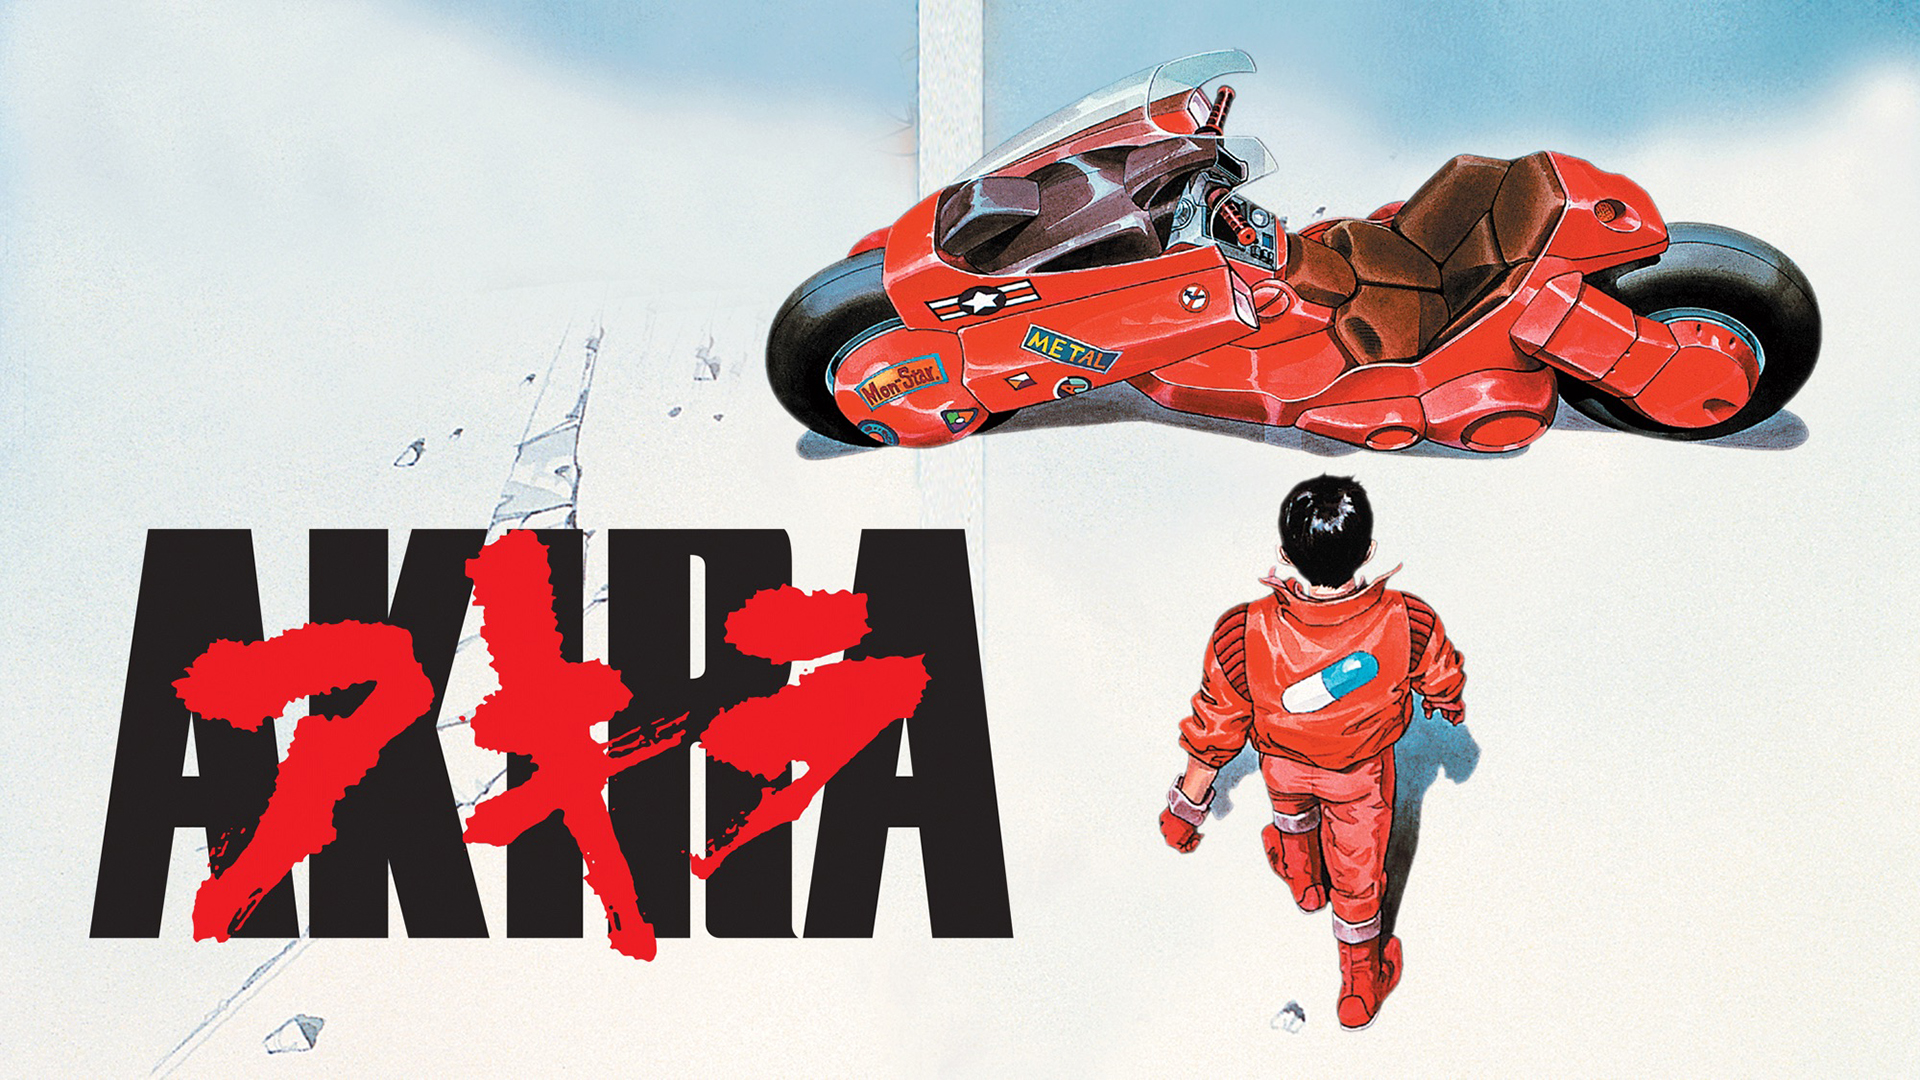 Akira Motorcycle Shotaro Kaneda Movie Poster 1920x1080